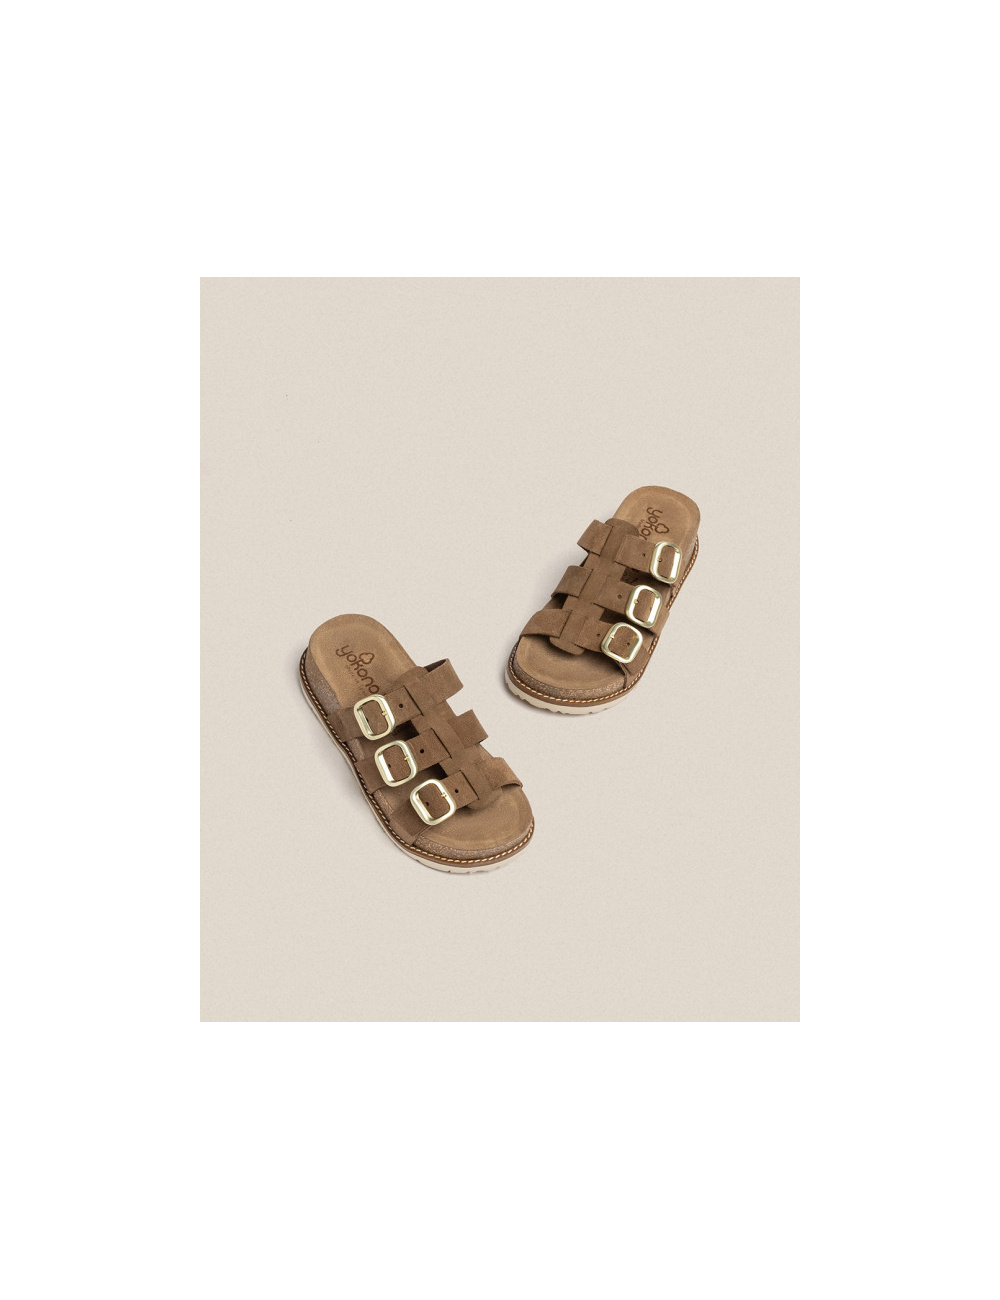 Sandalia de plataforma Oca 004 marrón